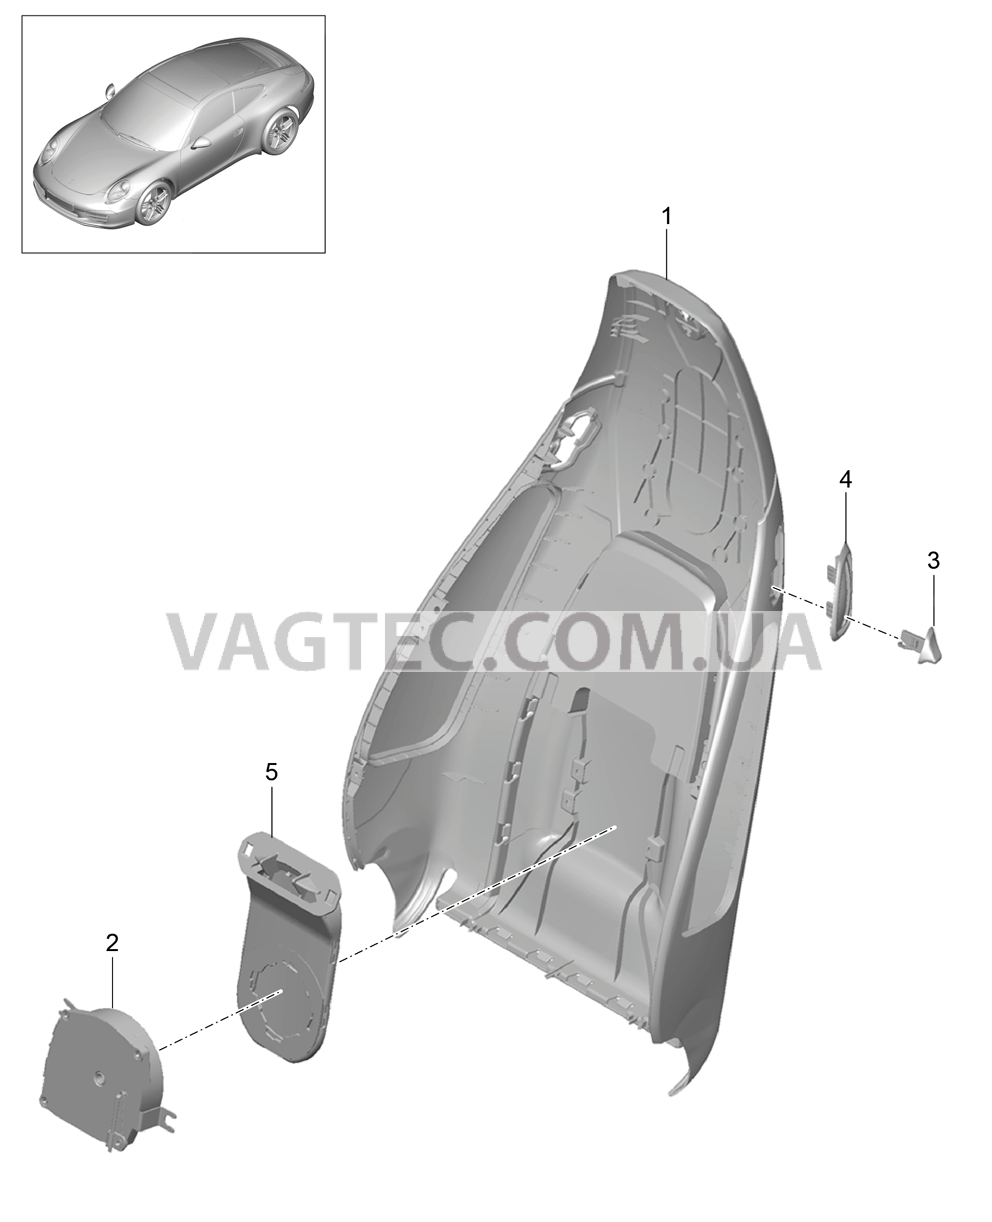 817-019 Каркас спинки, Спортивное сиденье PLUS, Детали для PORSCHE 911.Carrera 2012-2016